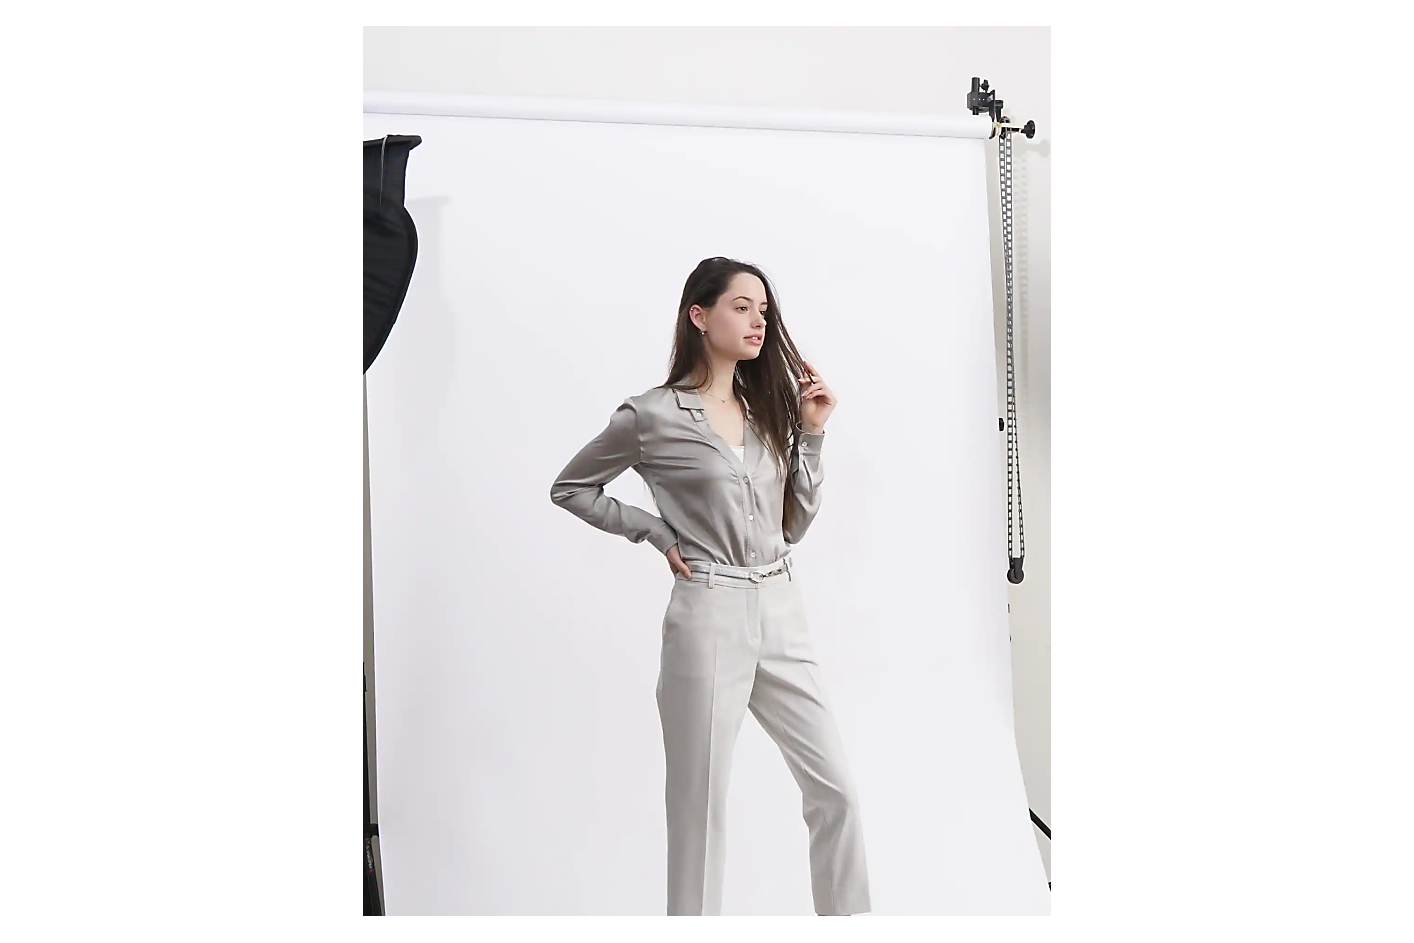 一個穿著淺灰色服裝的女人在攝影工作室的白色背景前擺姿勢。